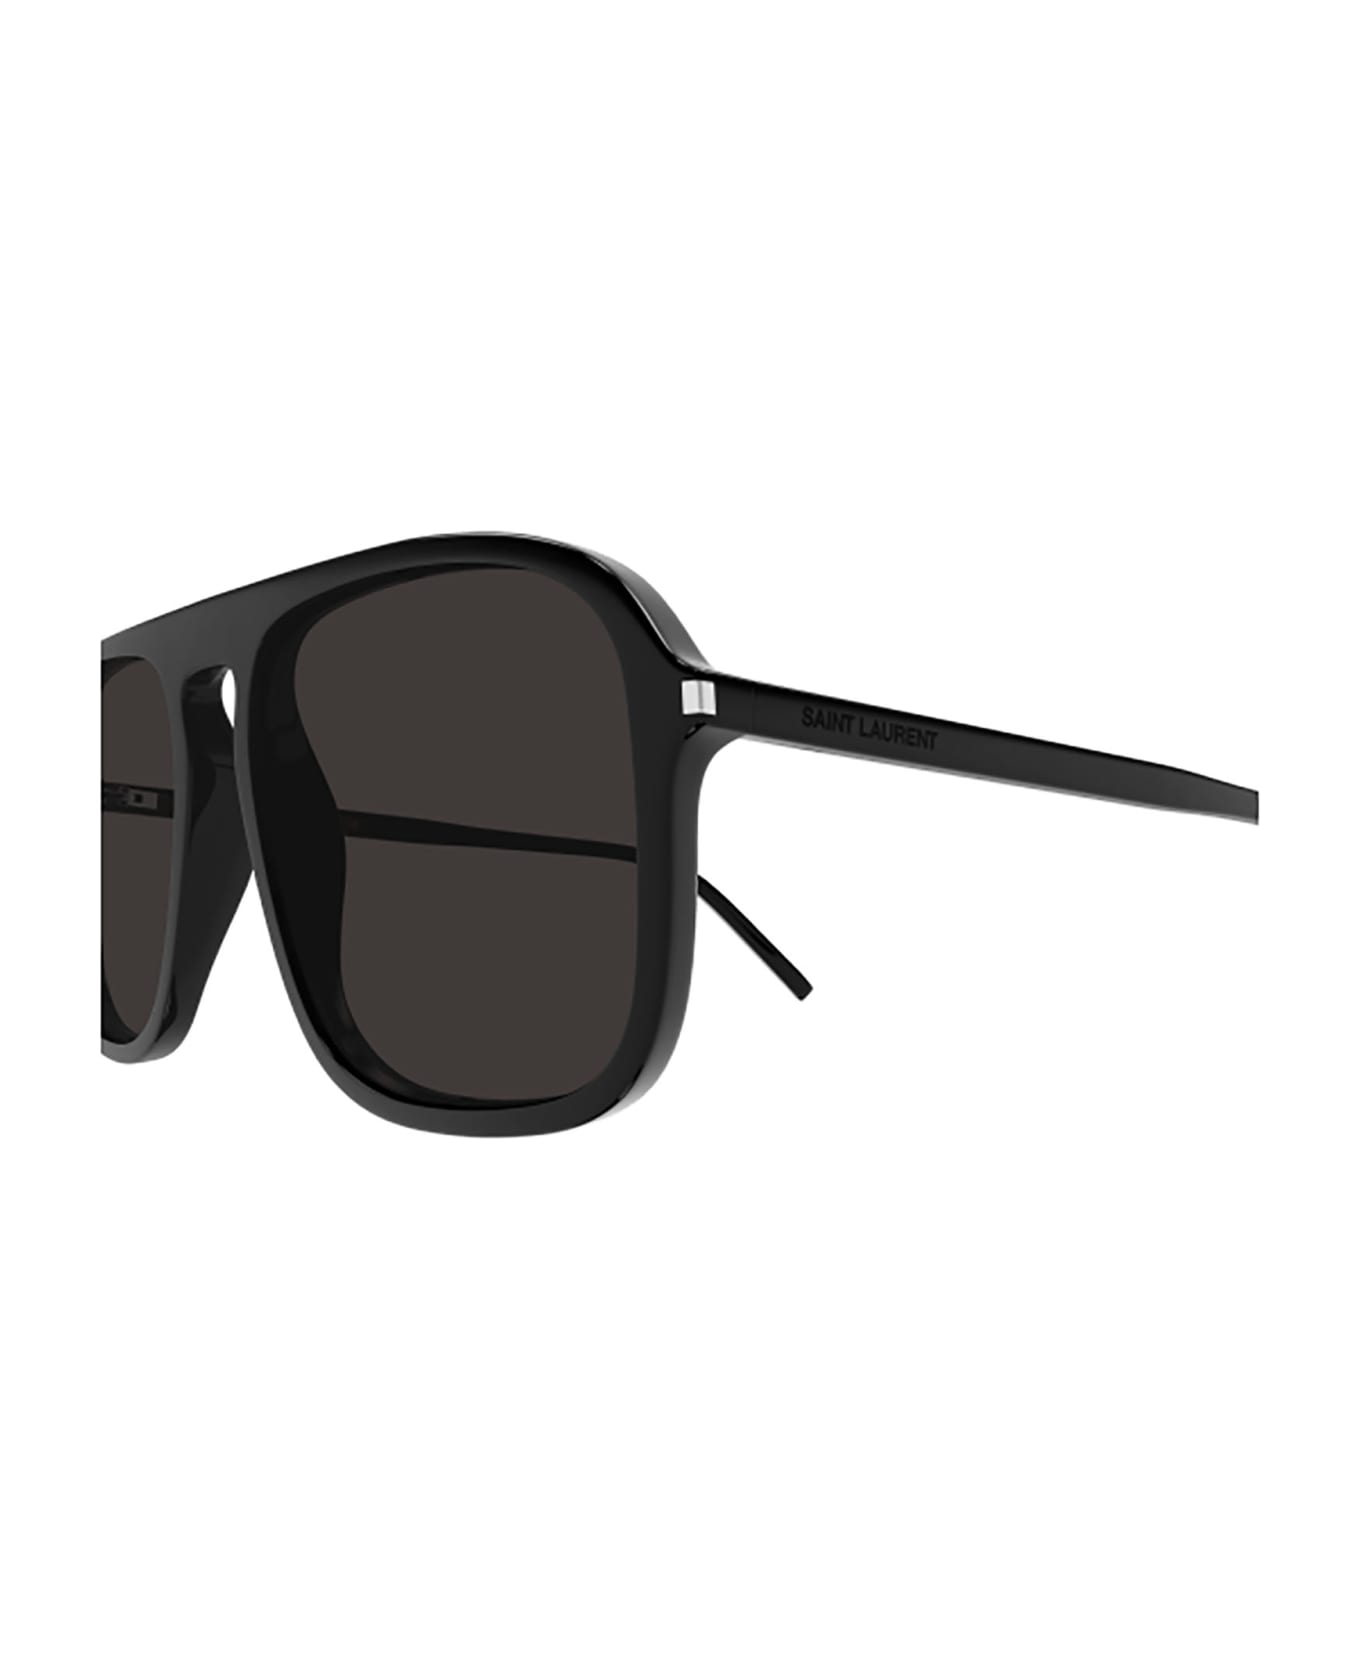 Saint Laurent Eyewear SL 590 Sunglasses - Black Black Black